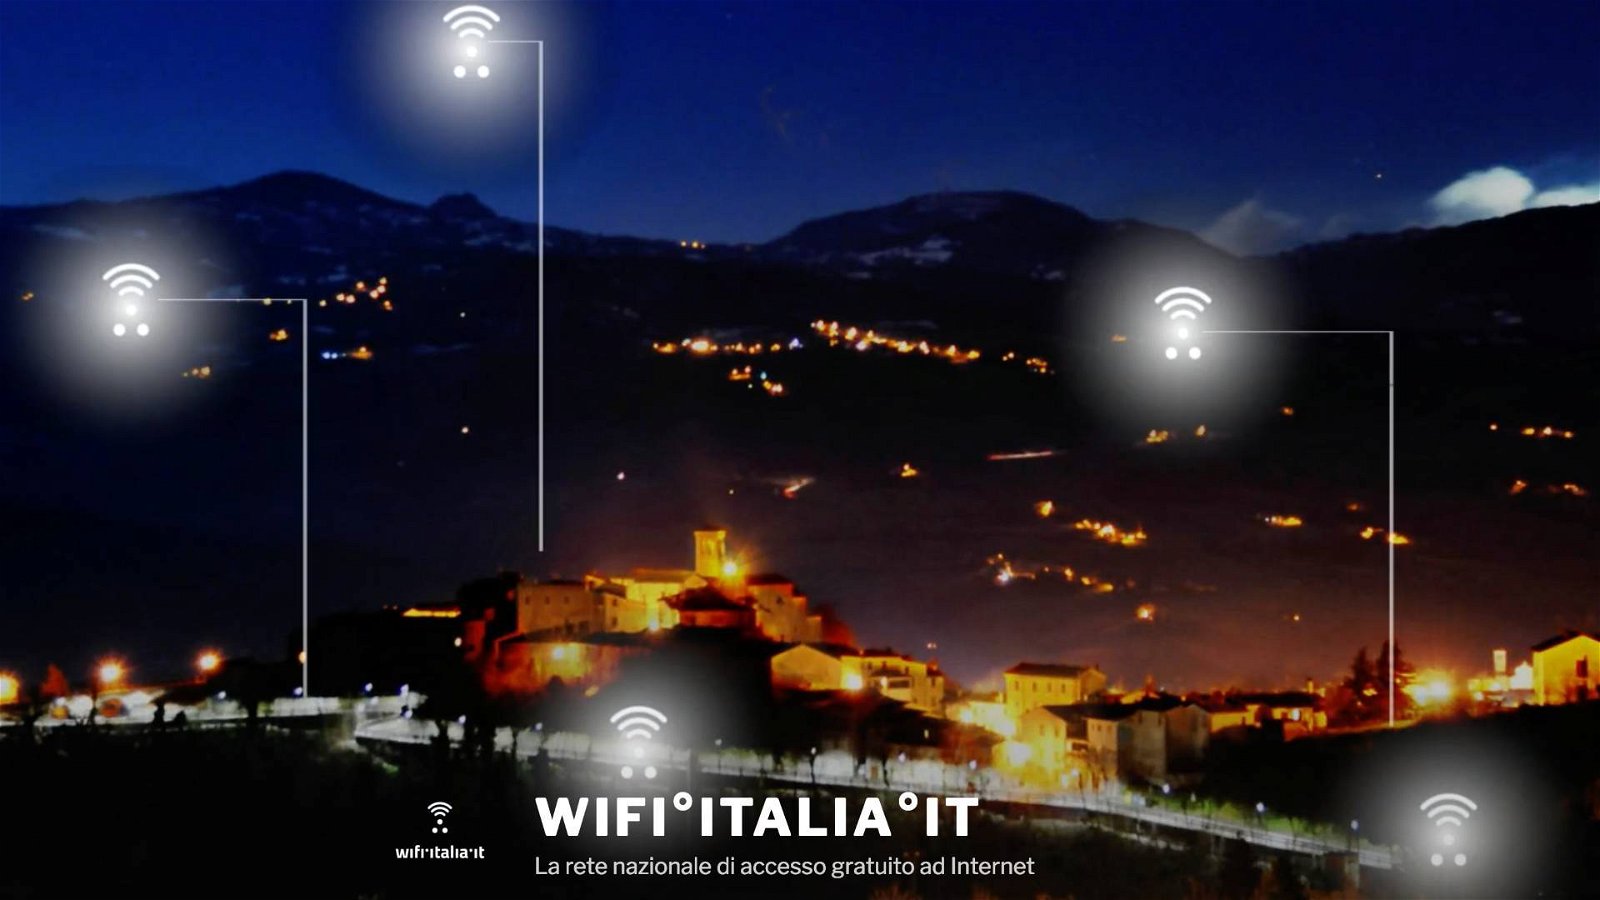 Immagine di Piazza Wifi Italia al via, accessi Internet gratuiti per i cittadini